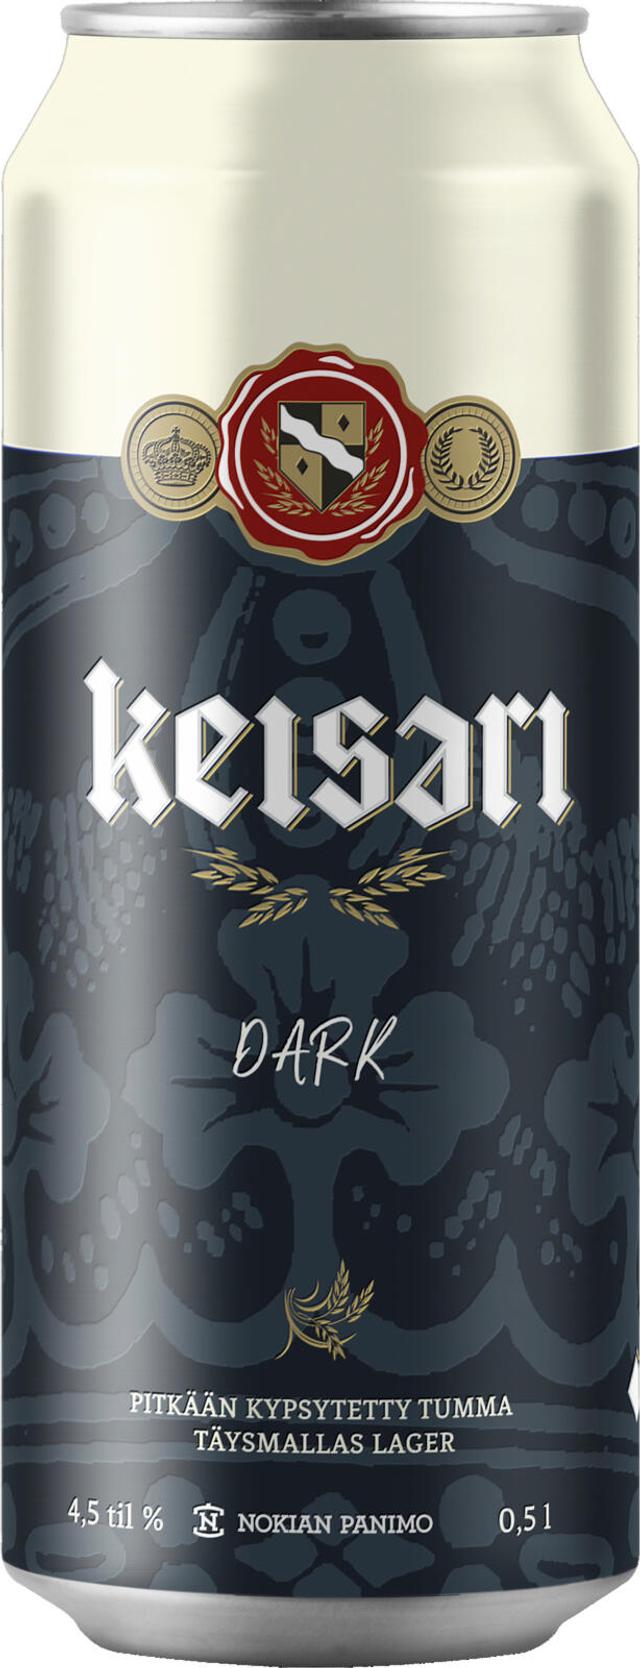 Keisari Dark olut 0,5l 4,5% tölkki